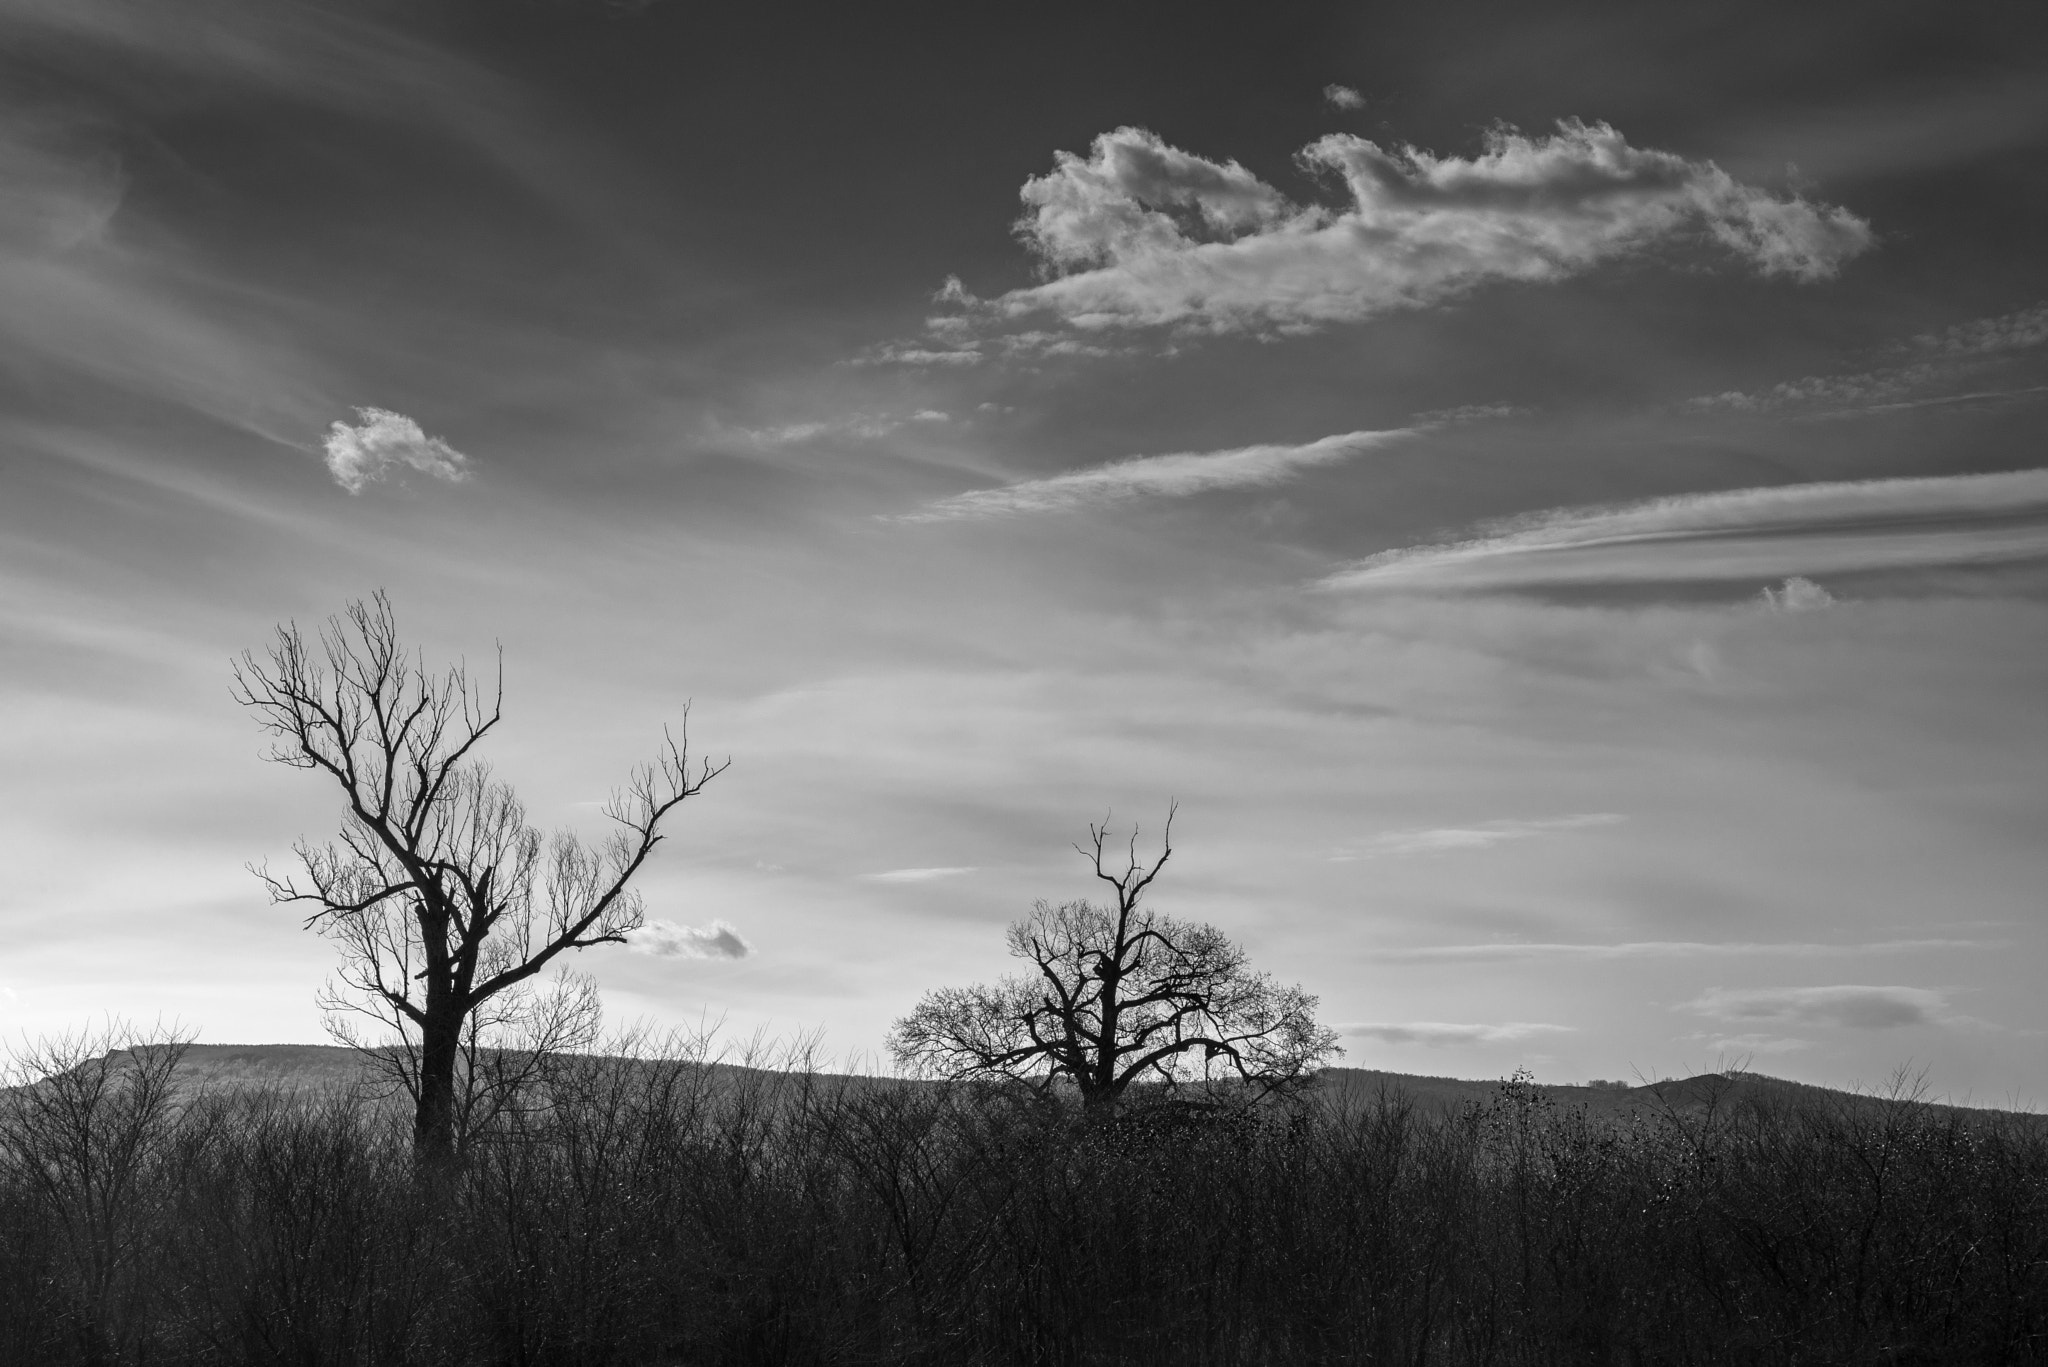 Nikon D600 + Nikon AF Nikkor 24-85mm F2.8-4D IF sample photo. Landscape tree silhouette photography